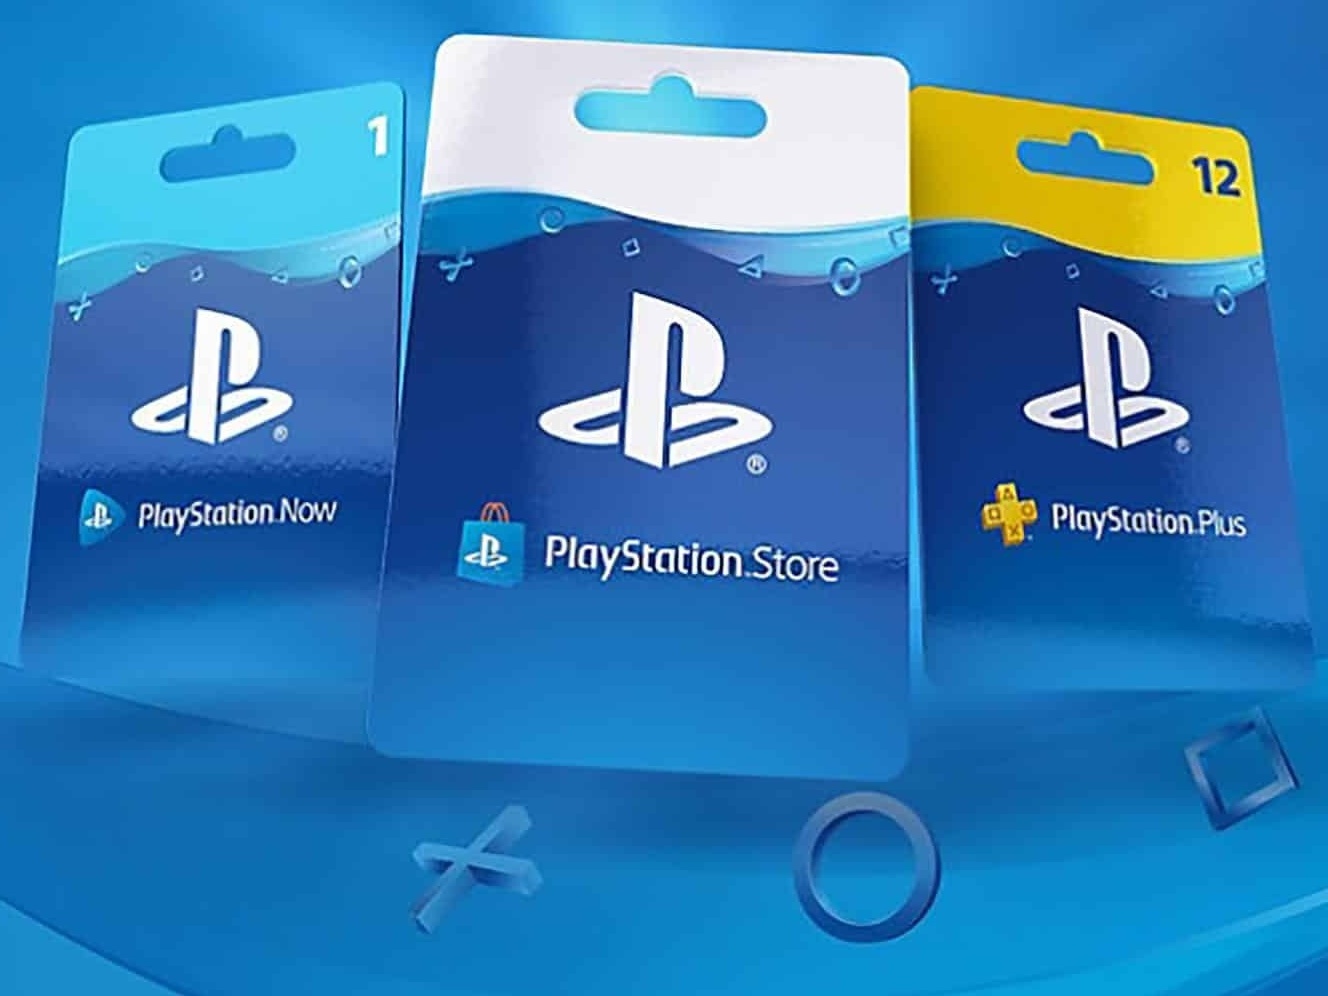 A partir de R$ 10: Gift Cards de PlayStation com novos preços na